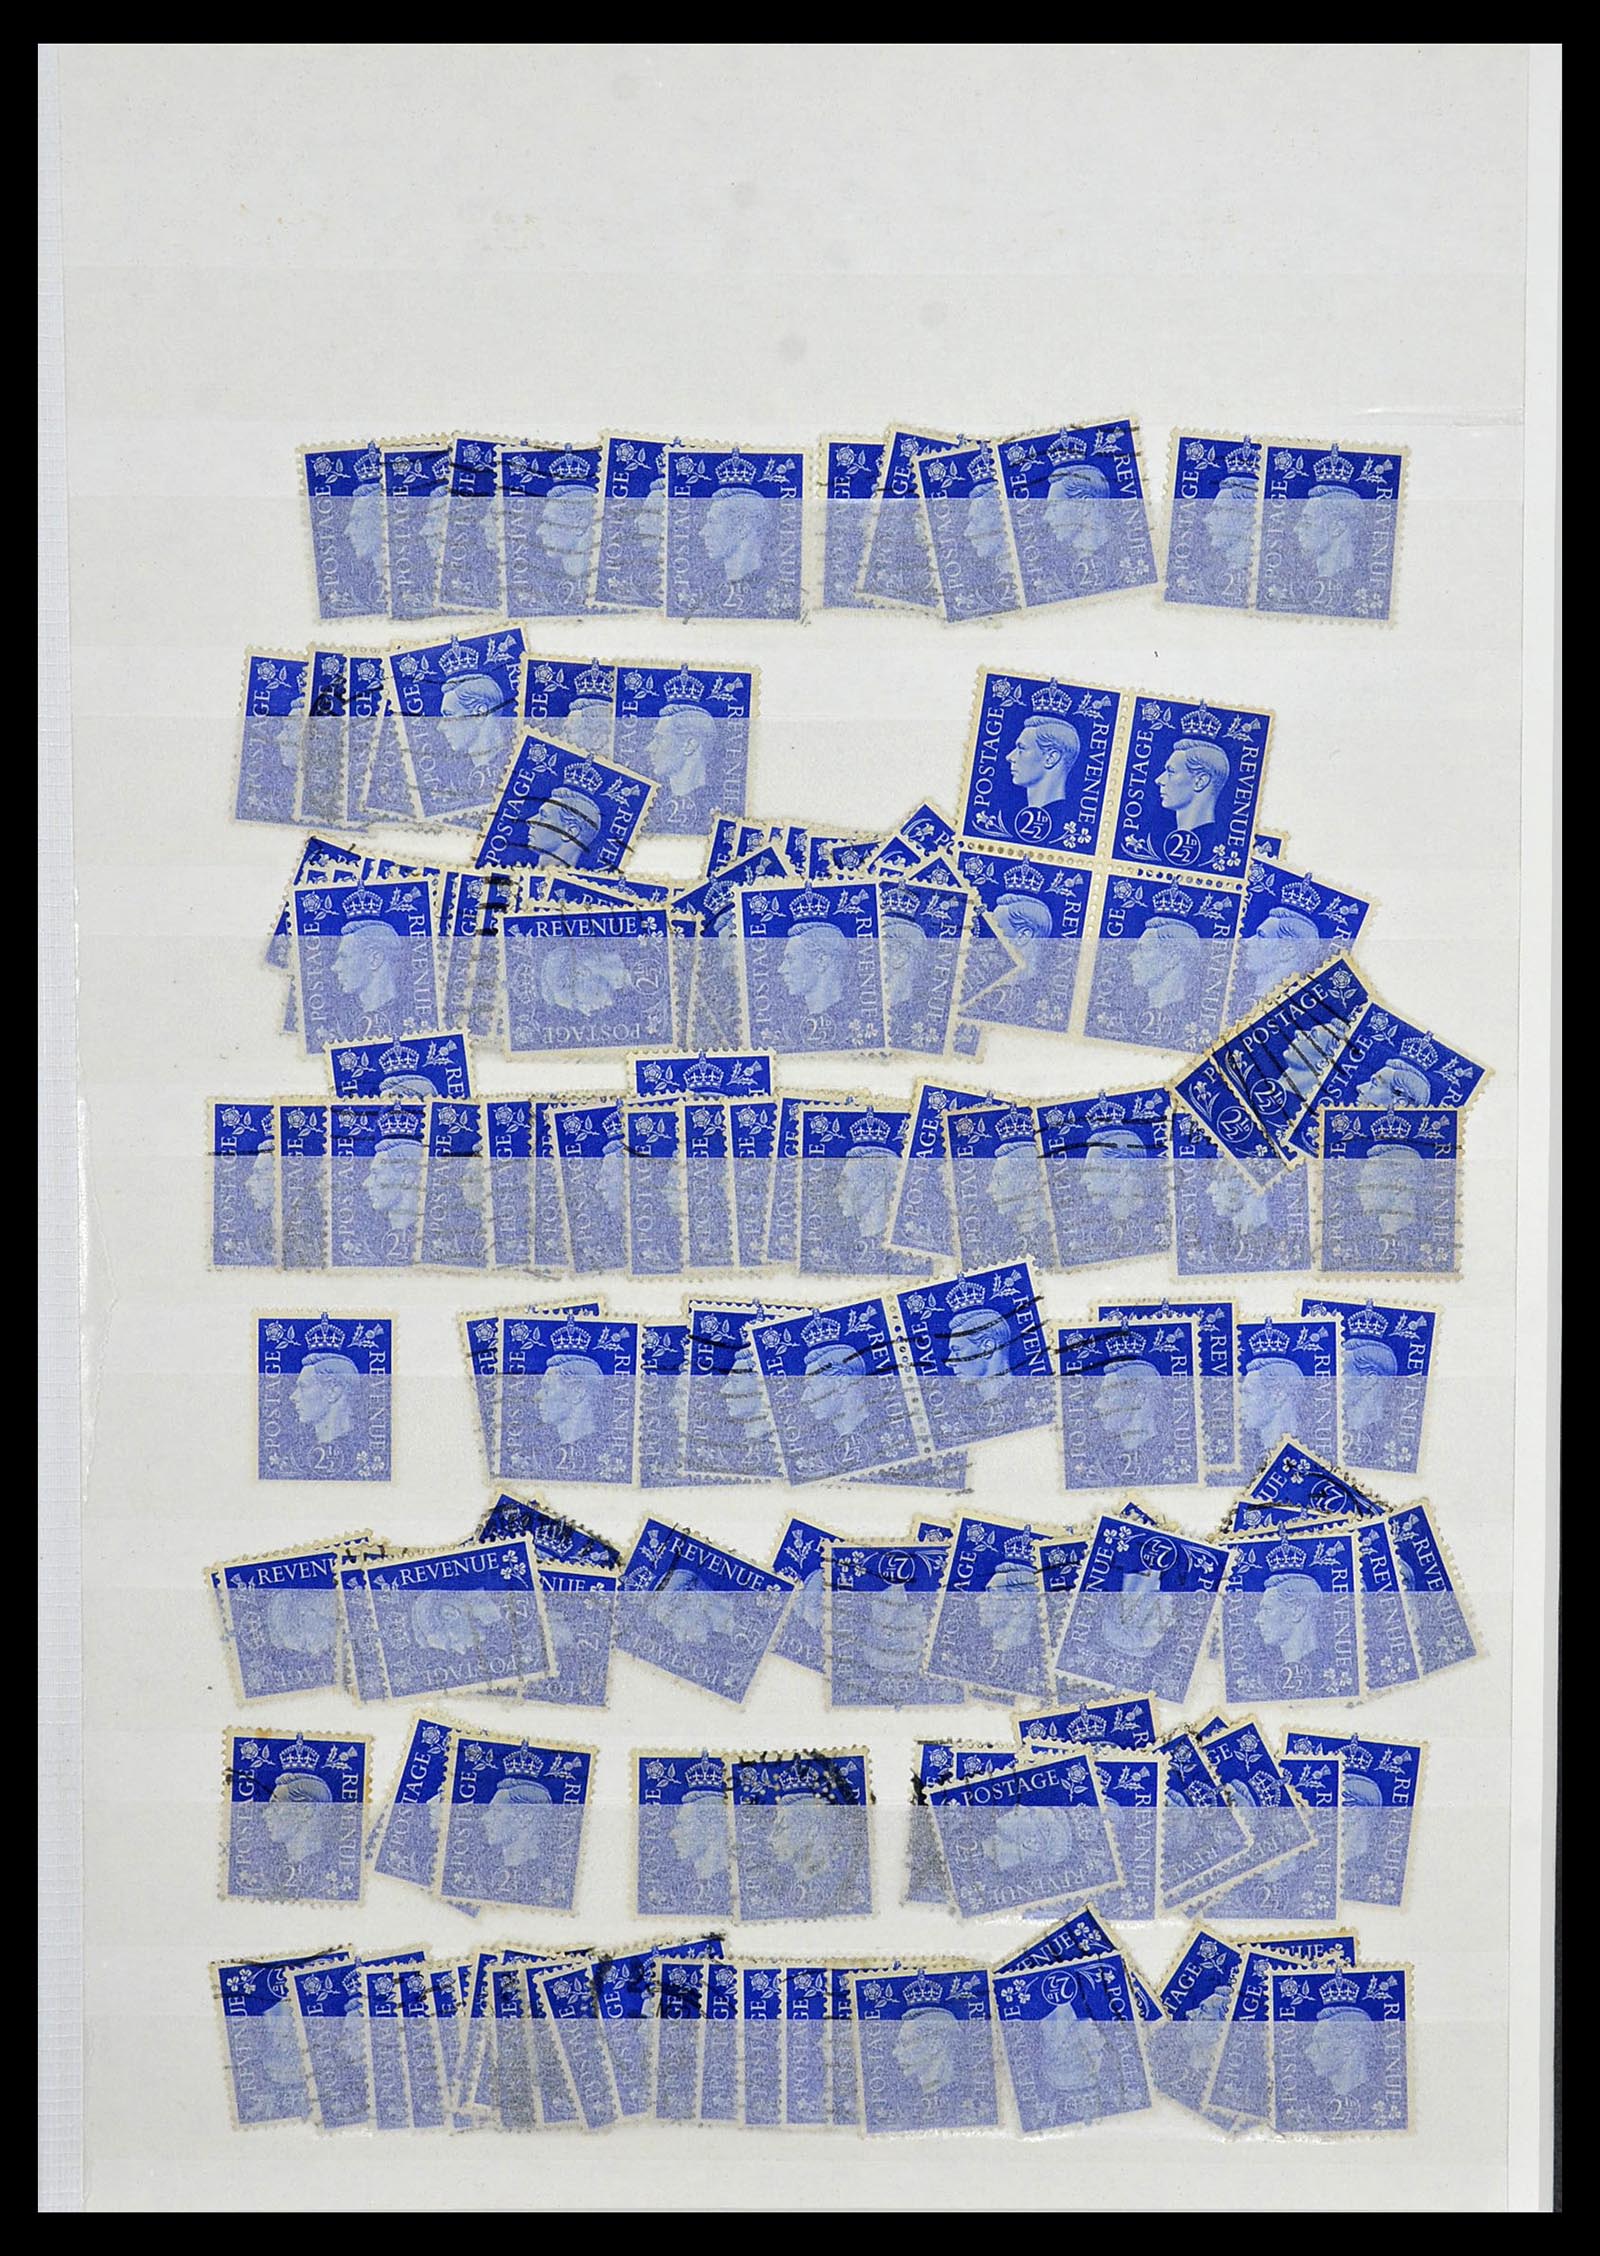 34368 033 - Postzegelverzameling 34368 Engeland uitzoekpartij 1858-1990.